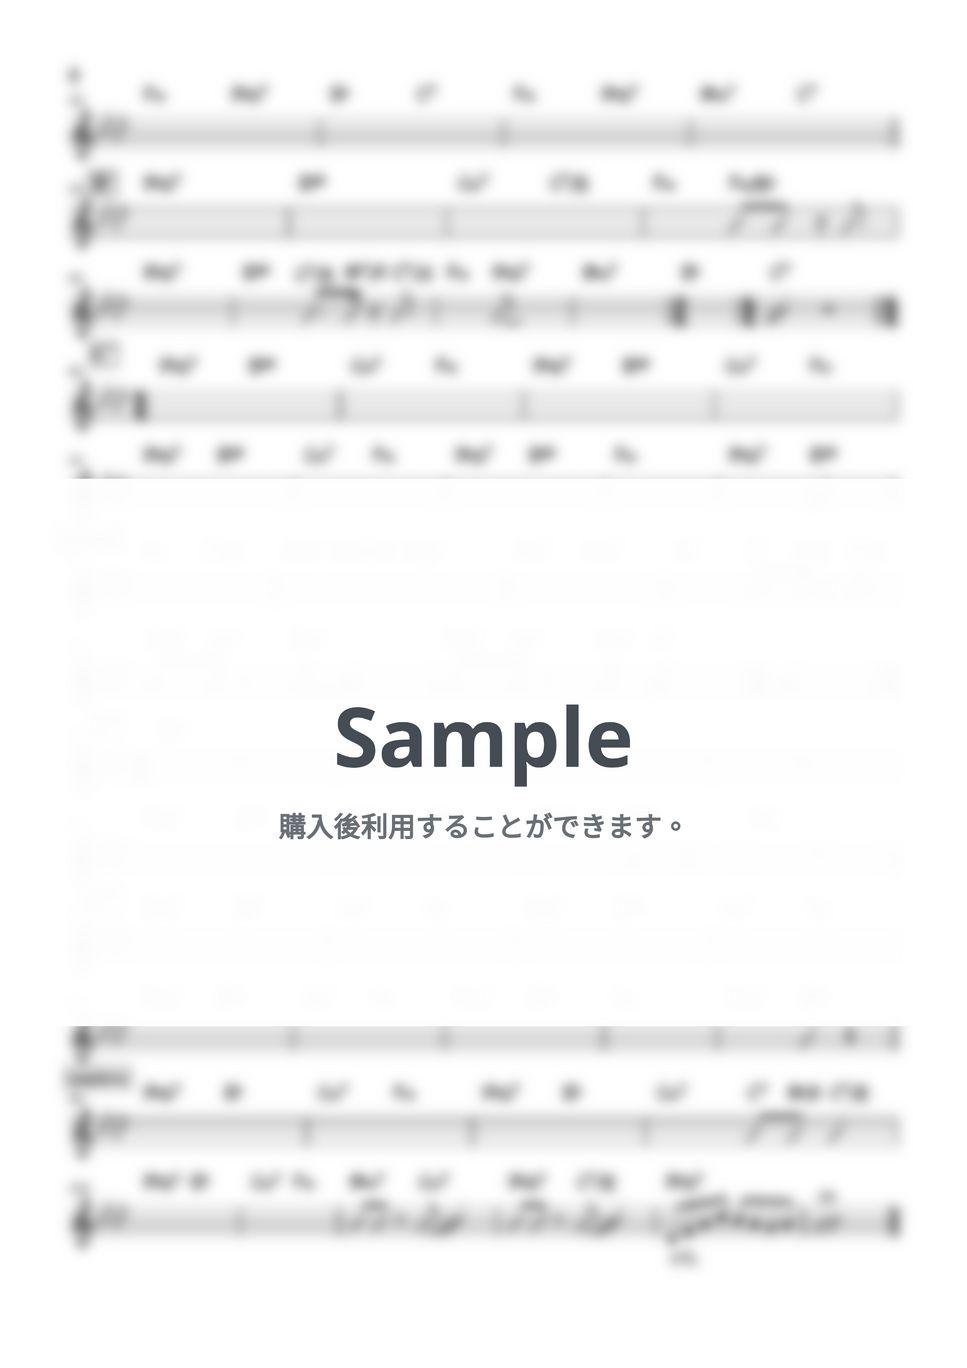 いきものがかり - SAKURA (バンド用コード譜) by 箱譜屋